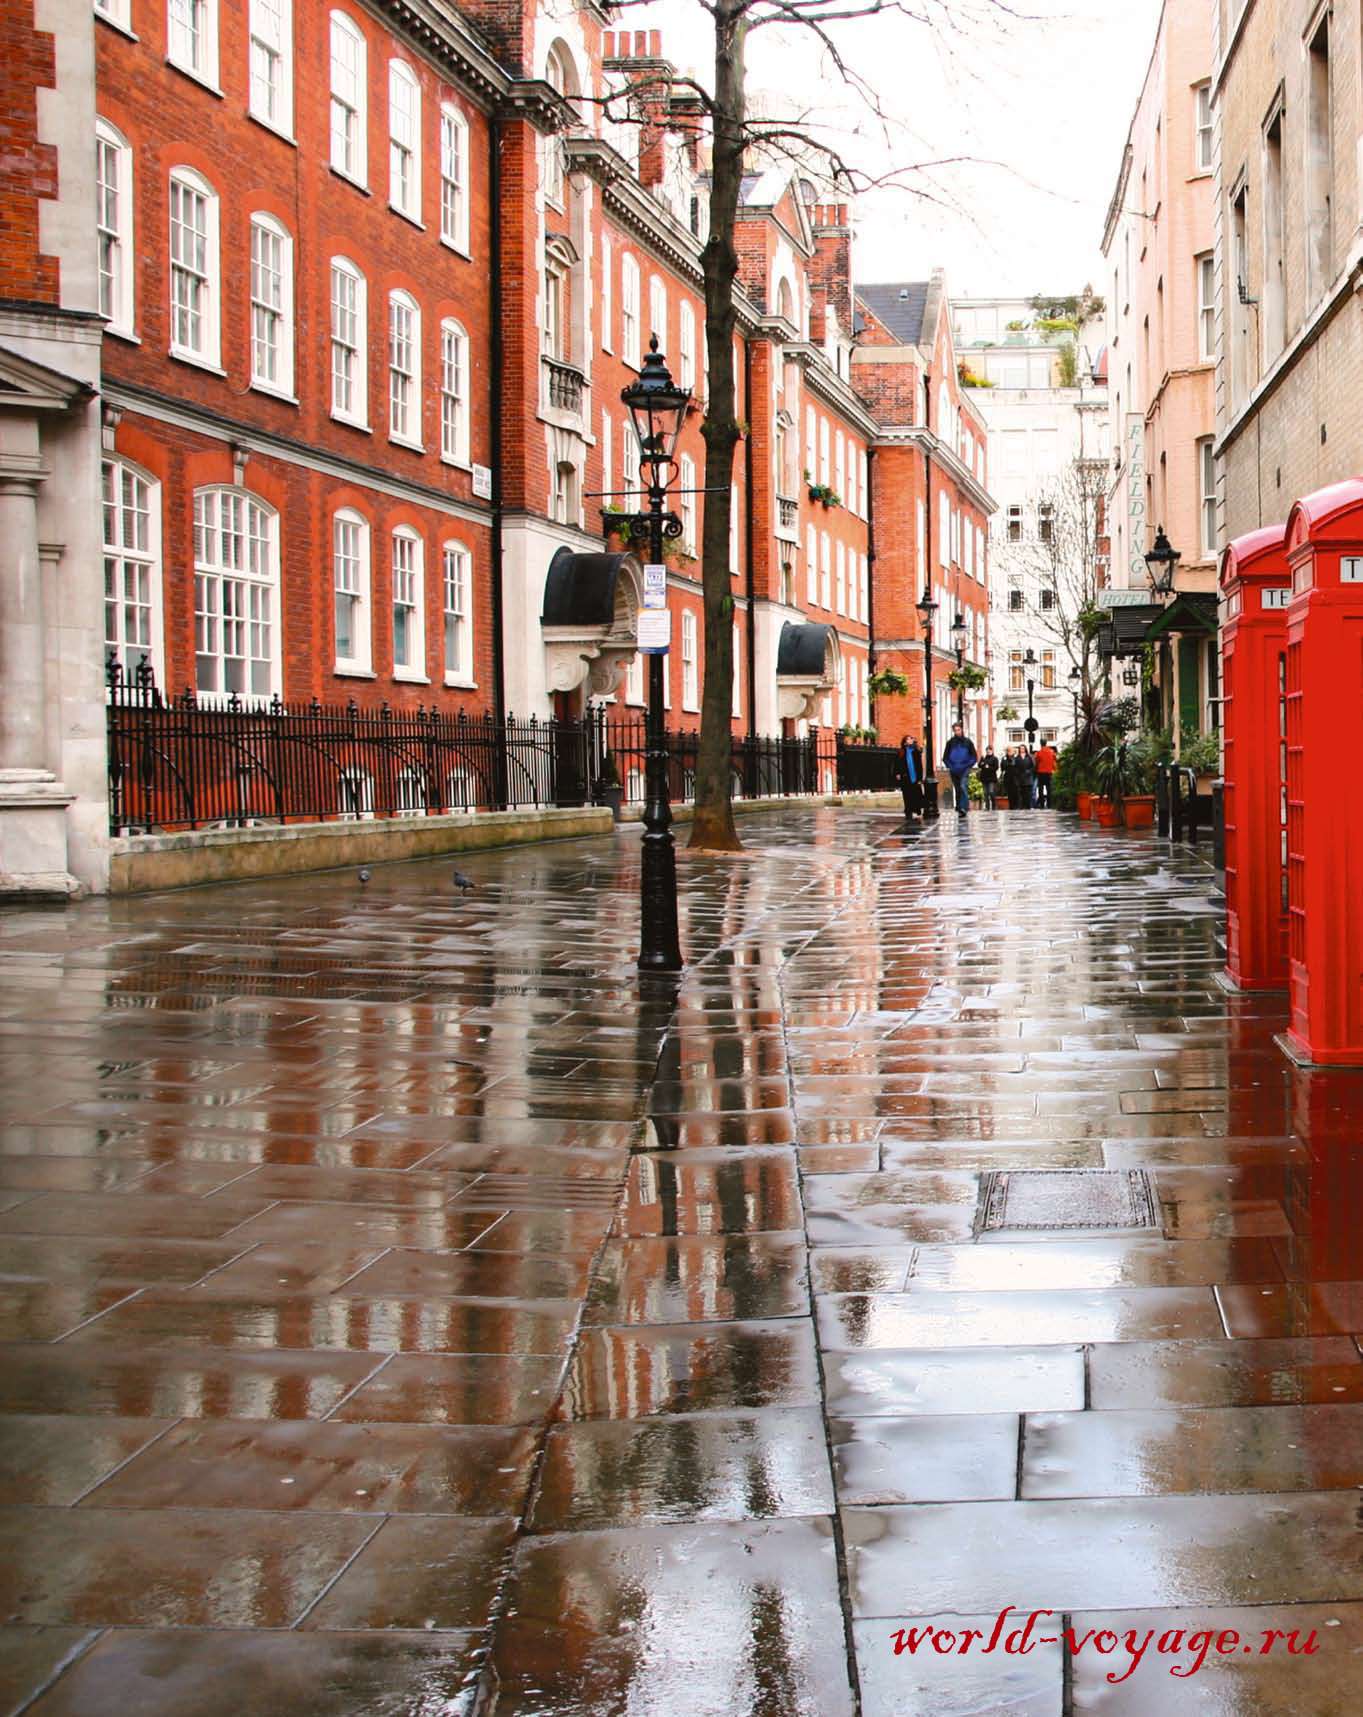 Даже в дождь лондонские улицы выглядят уютными